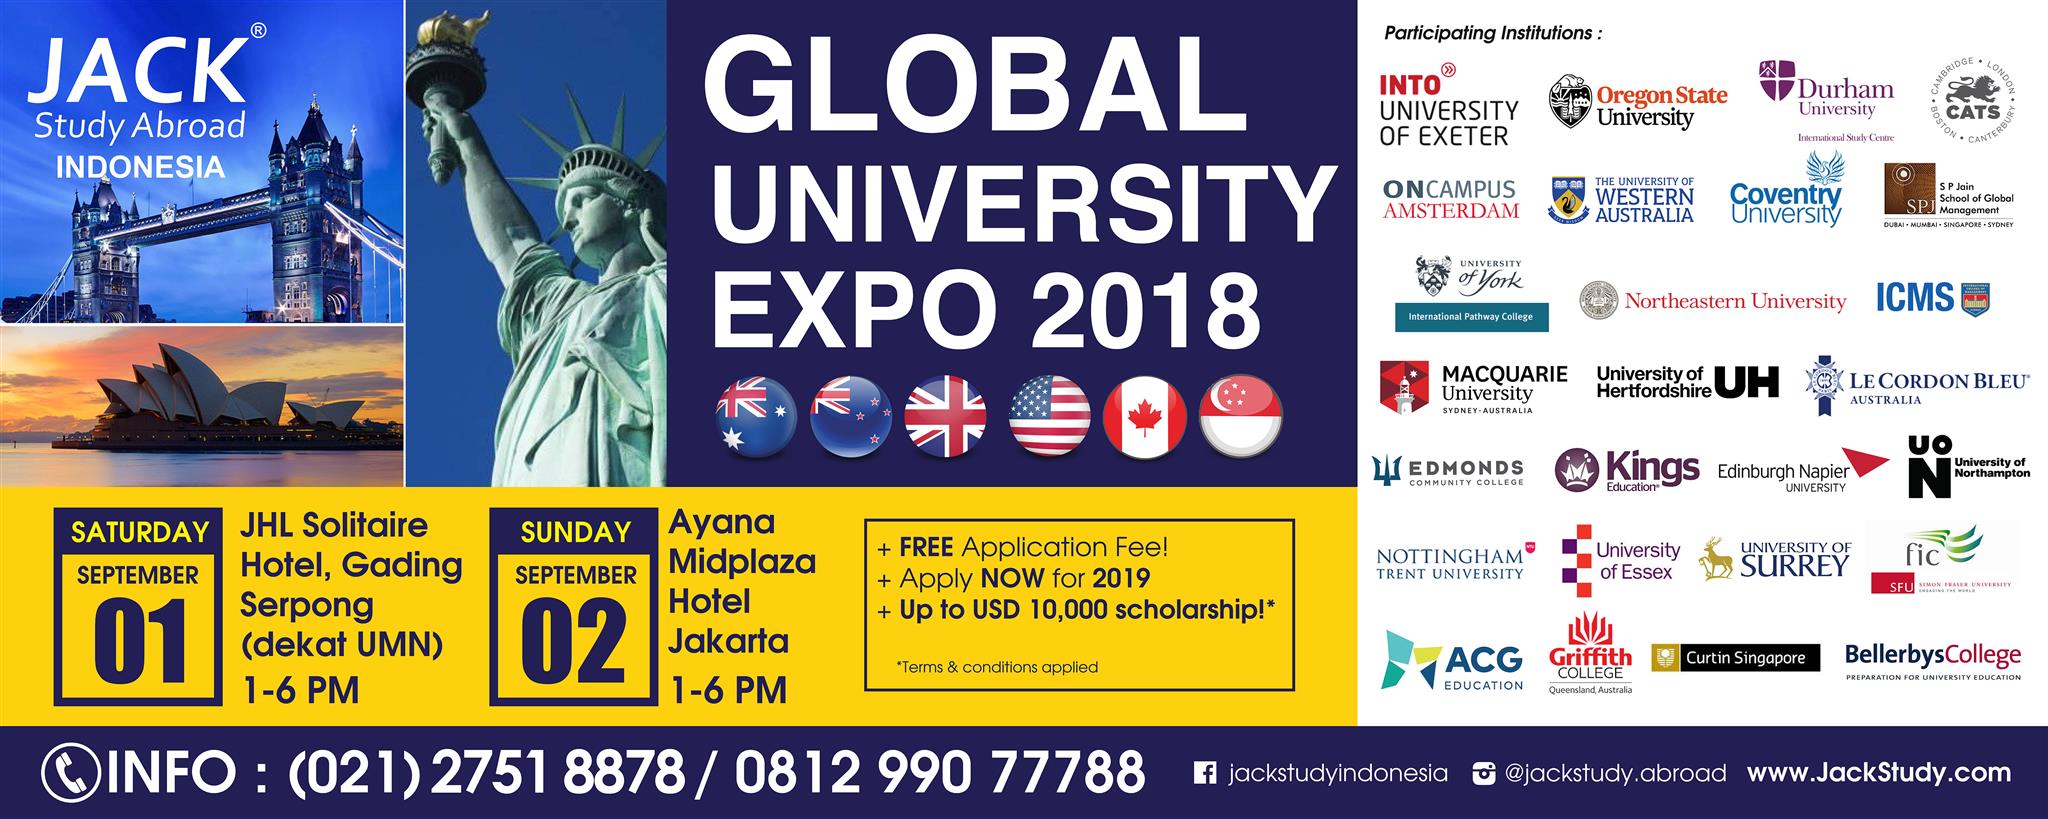 Global University Expo 2018